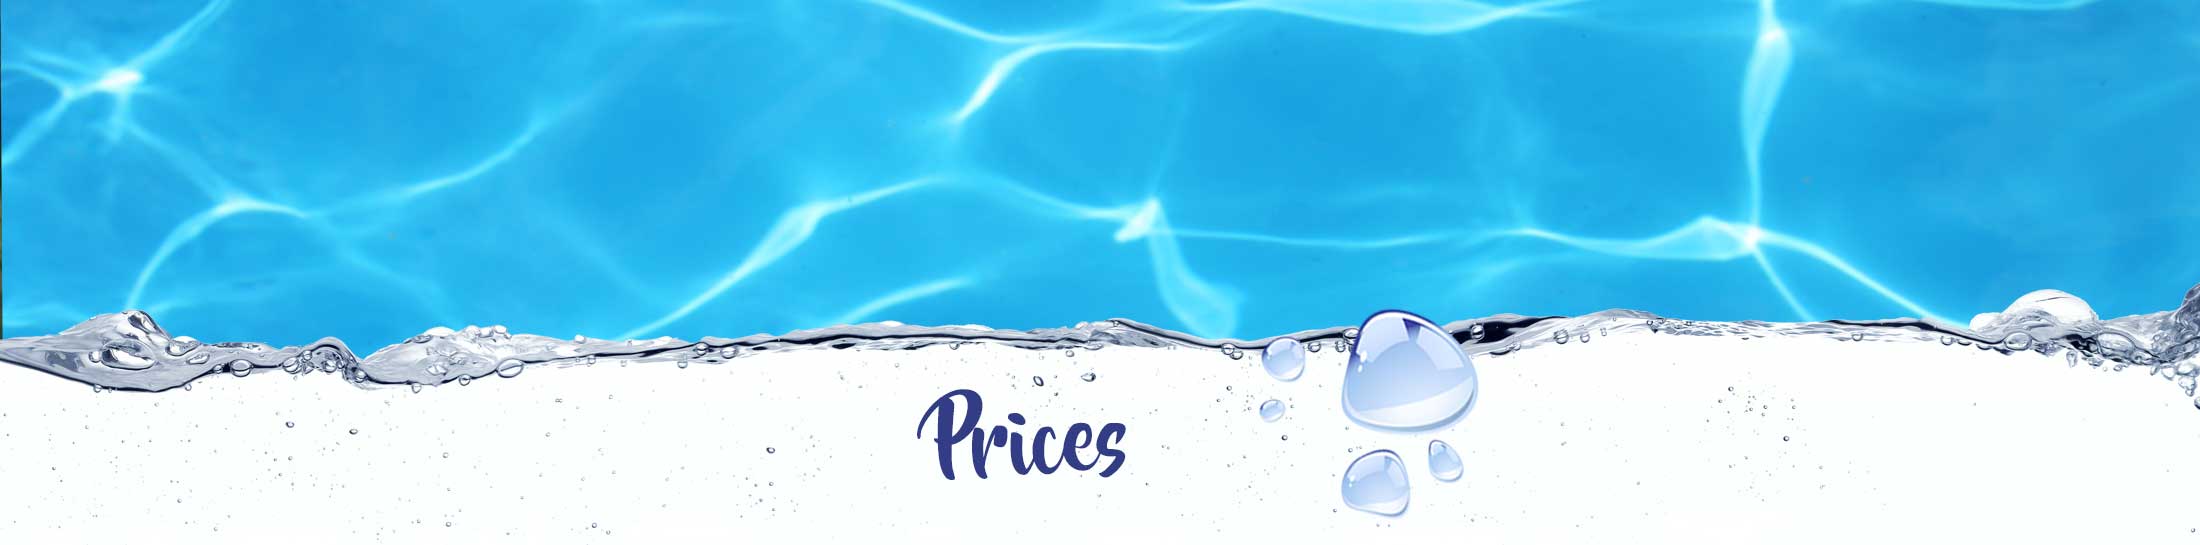 Prices Swimfun Joure